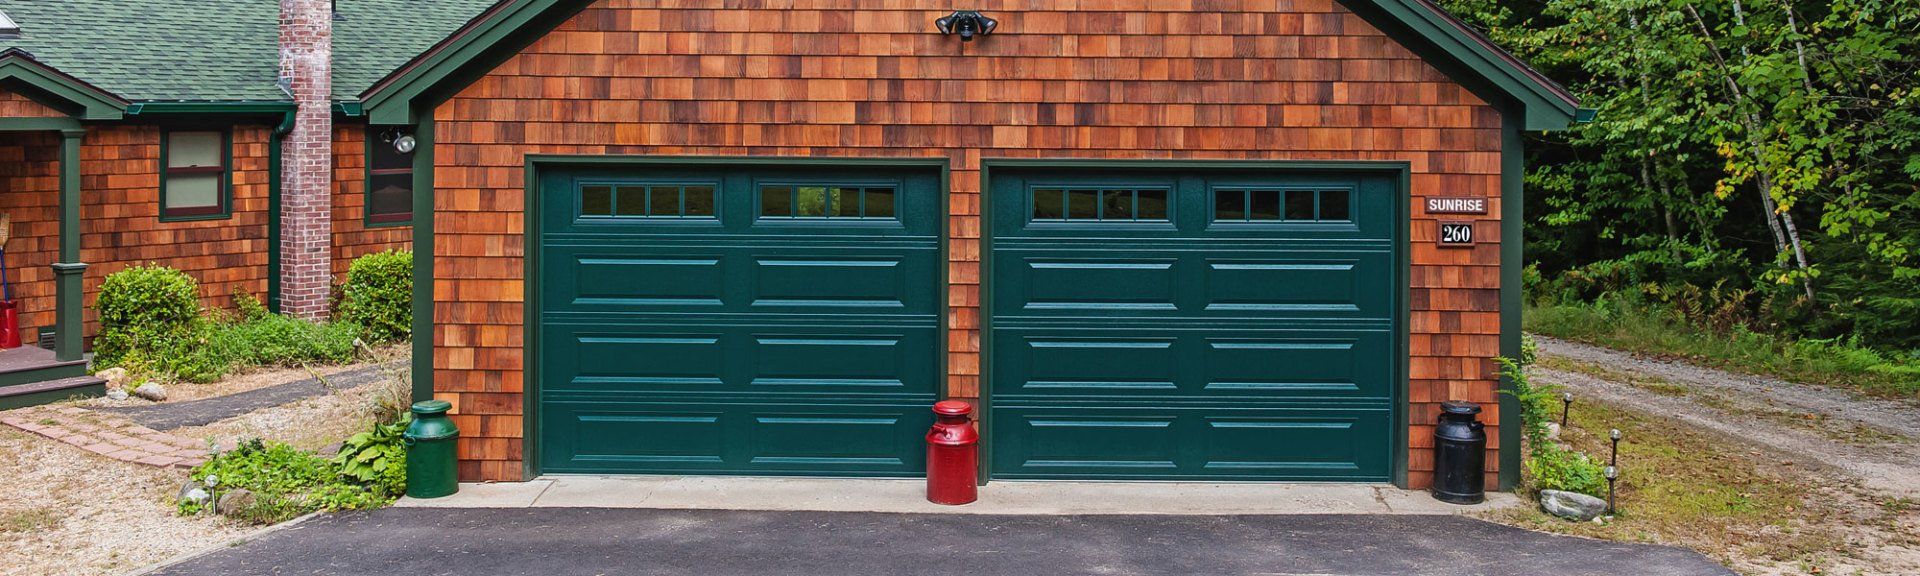 Door Openers — Green Steel Garage Doors in Big Rock, IL